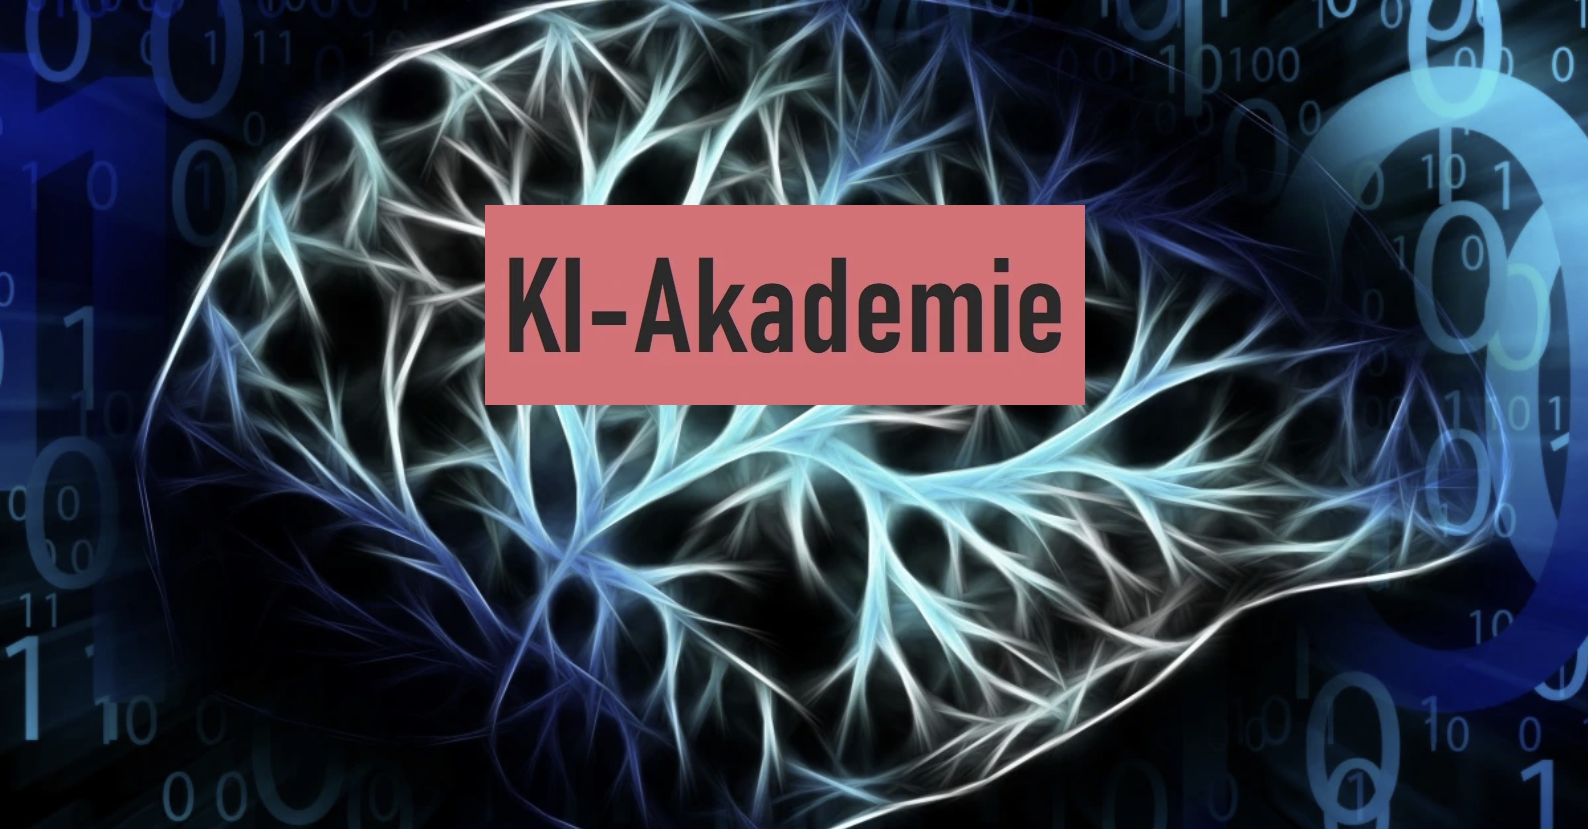 KI-Akademie